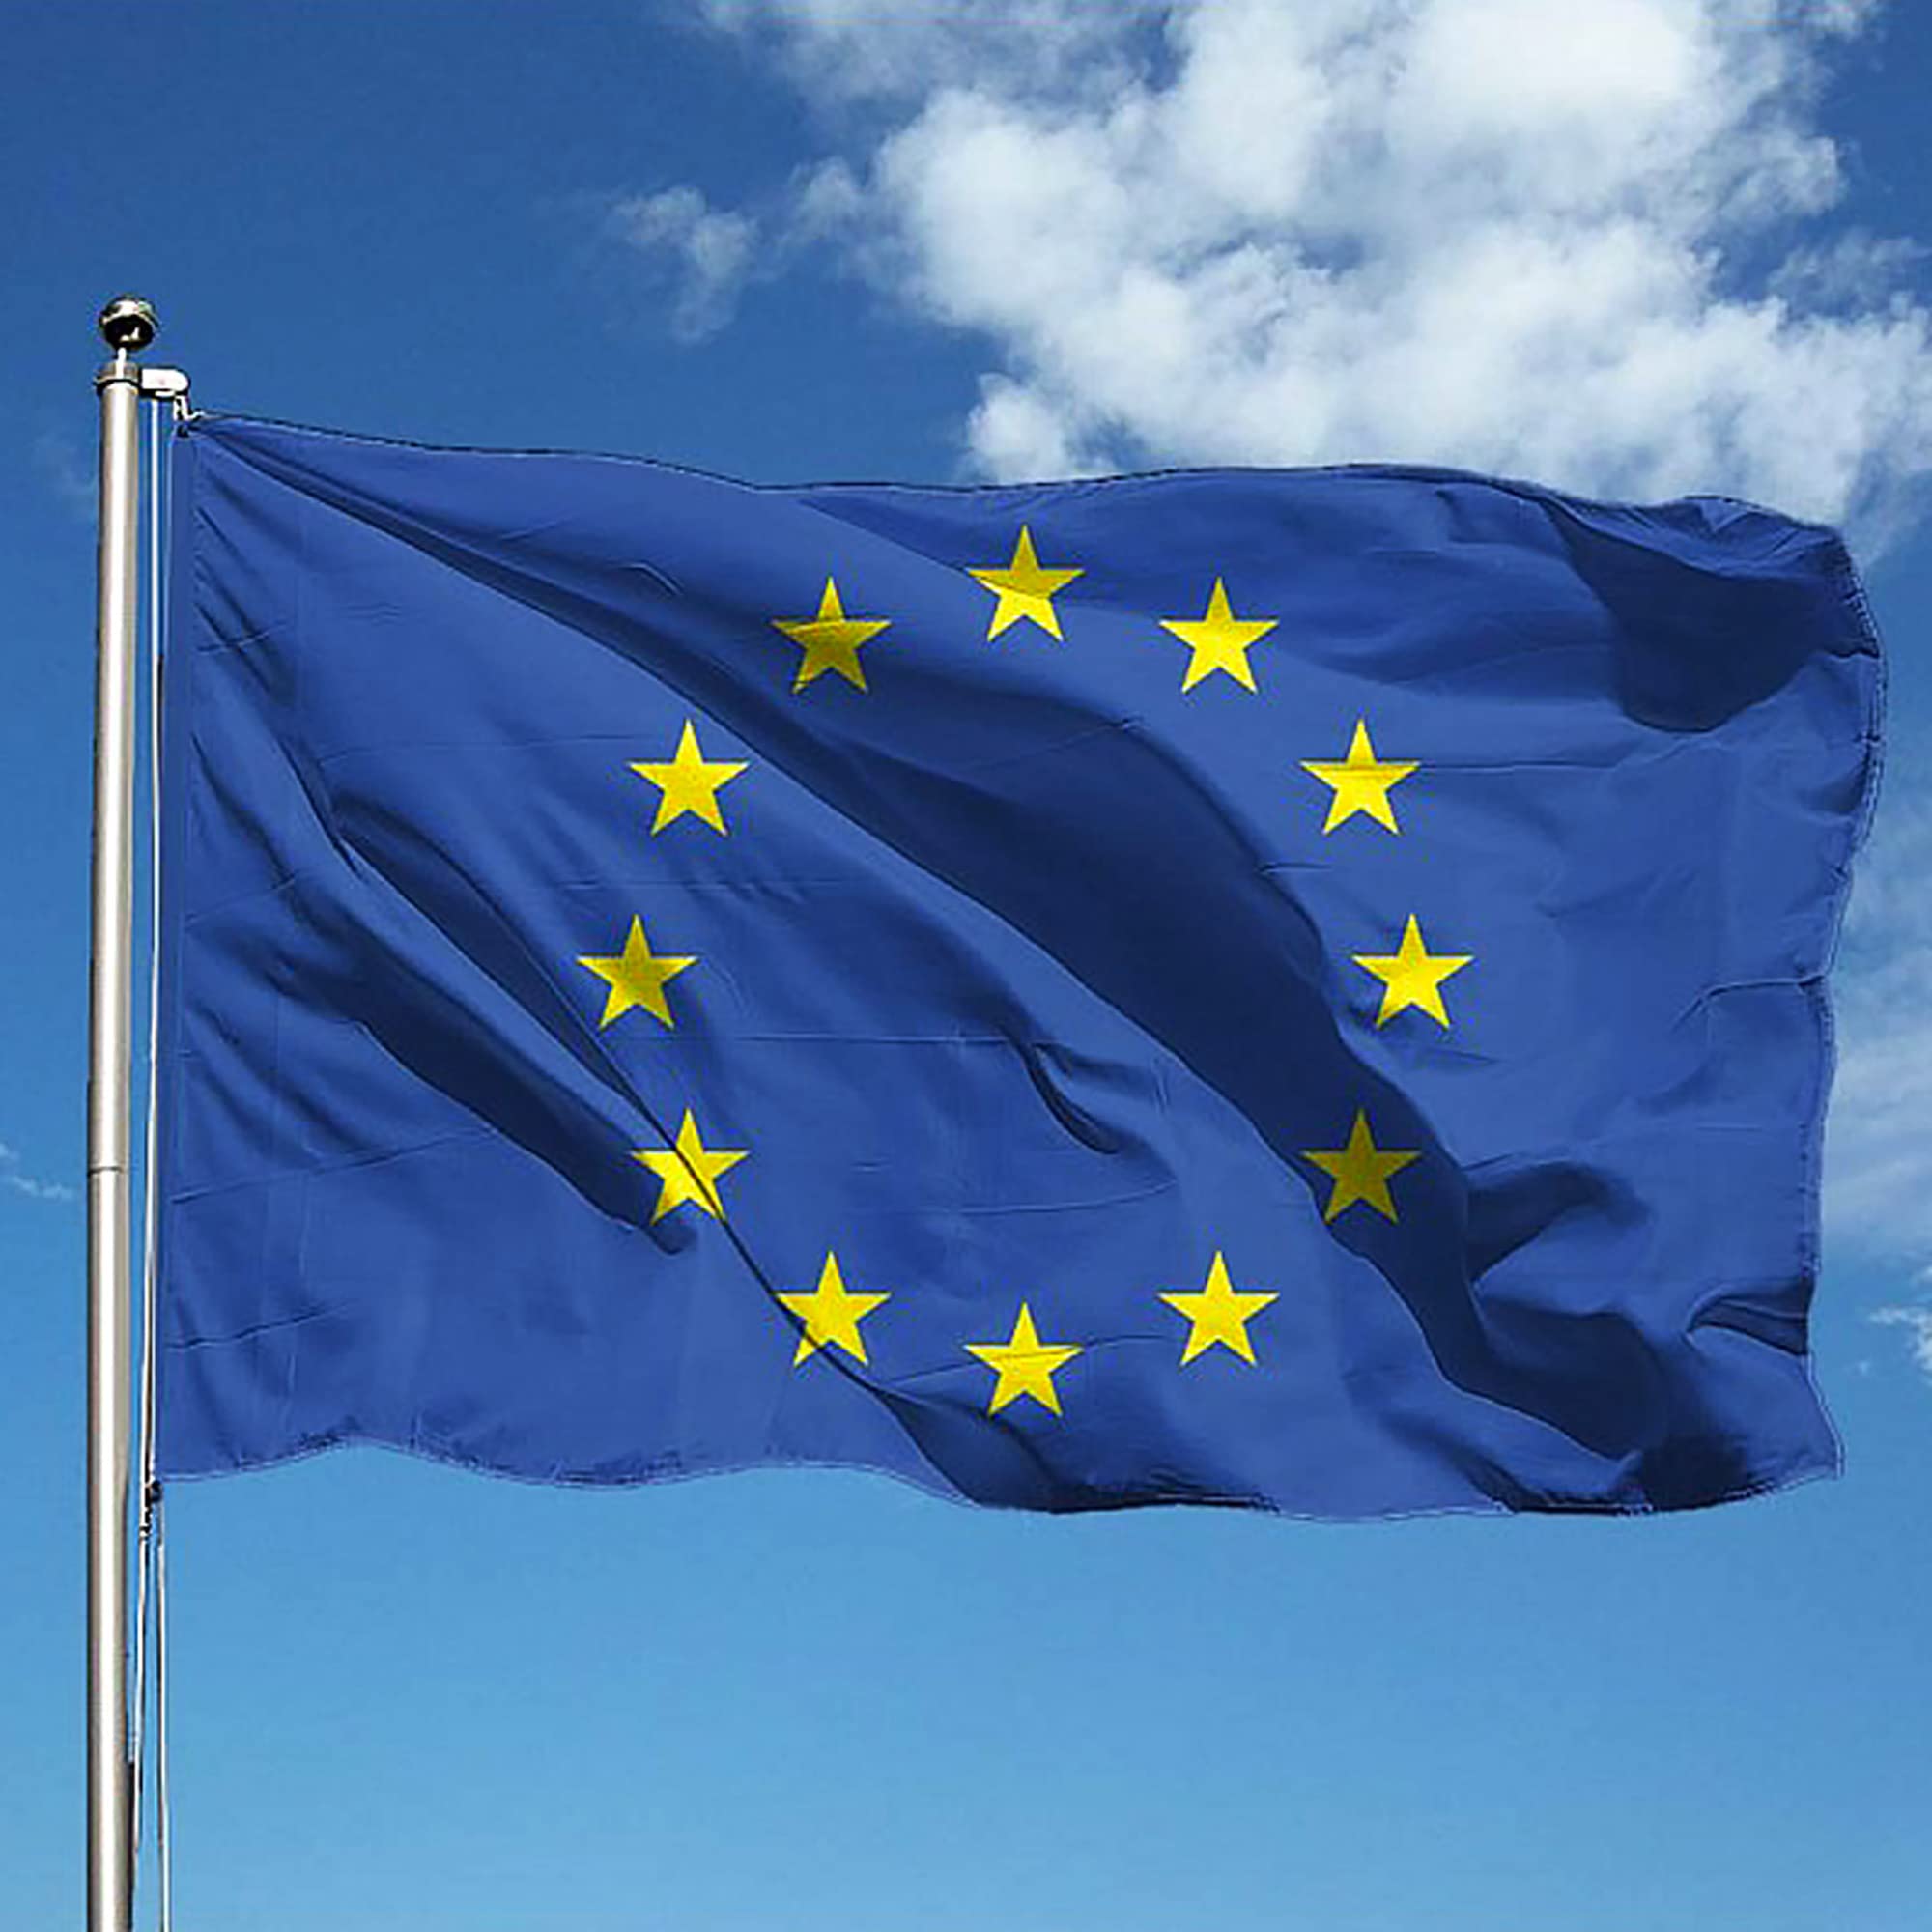 Europa-Flagge, 150 x 220 cm, aus nautischem Polyester, 115 g/m², mit doppeltem Rand, Seil und Mantel. Flamme-Behandlung B1, geeignet sowohl für den Innen- und Außenbereich